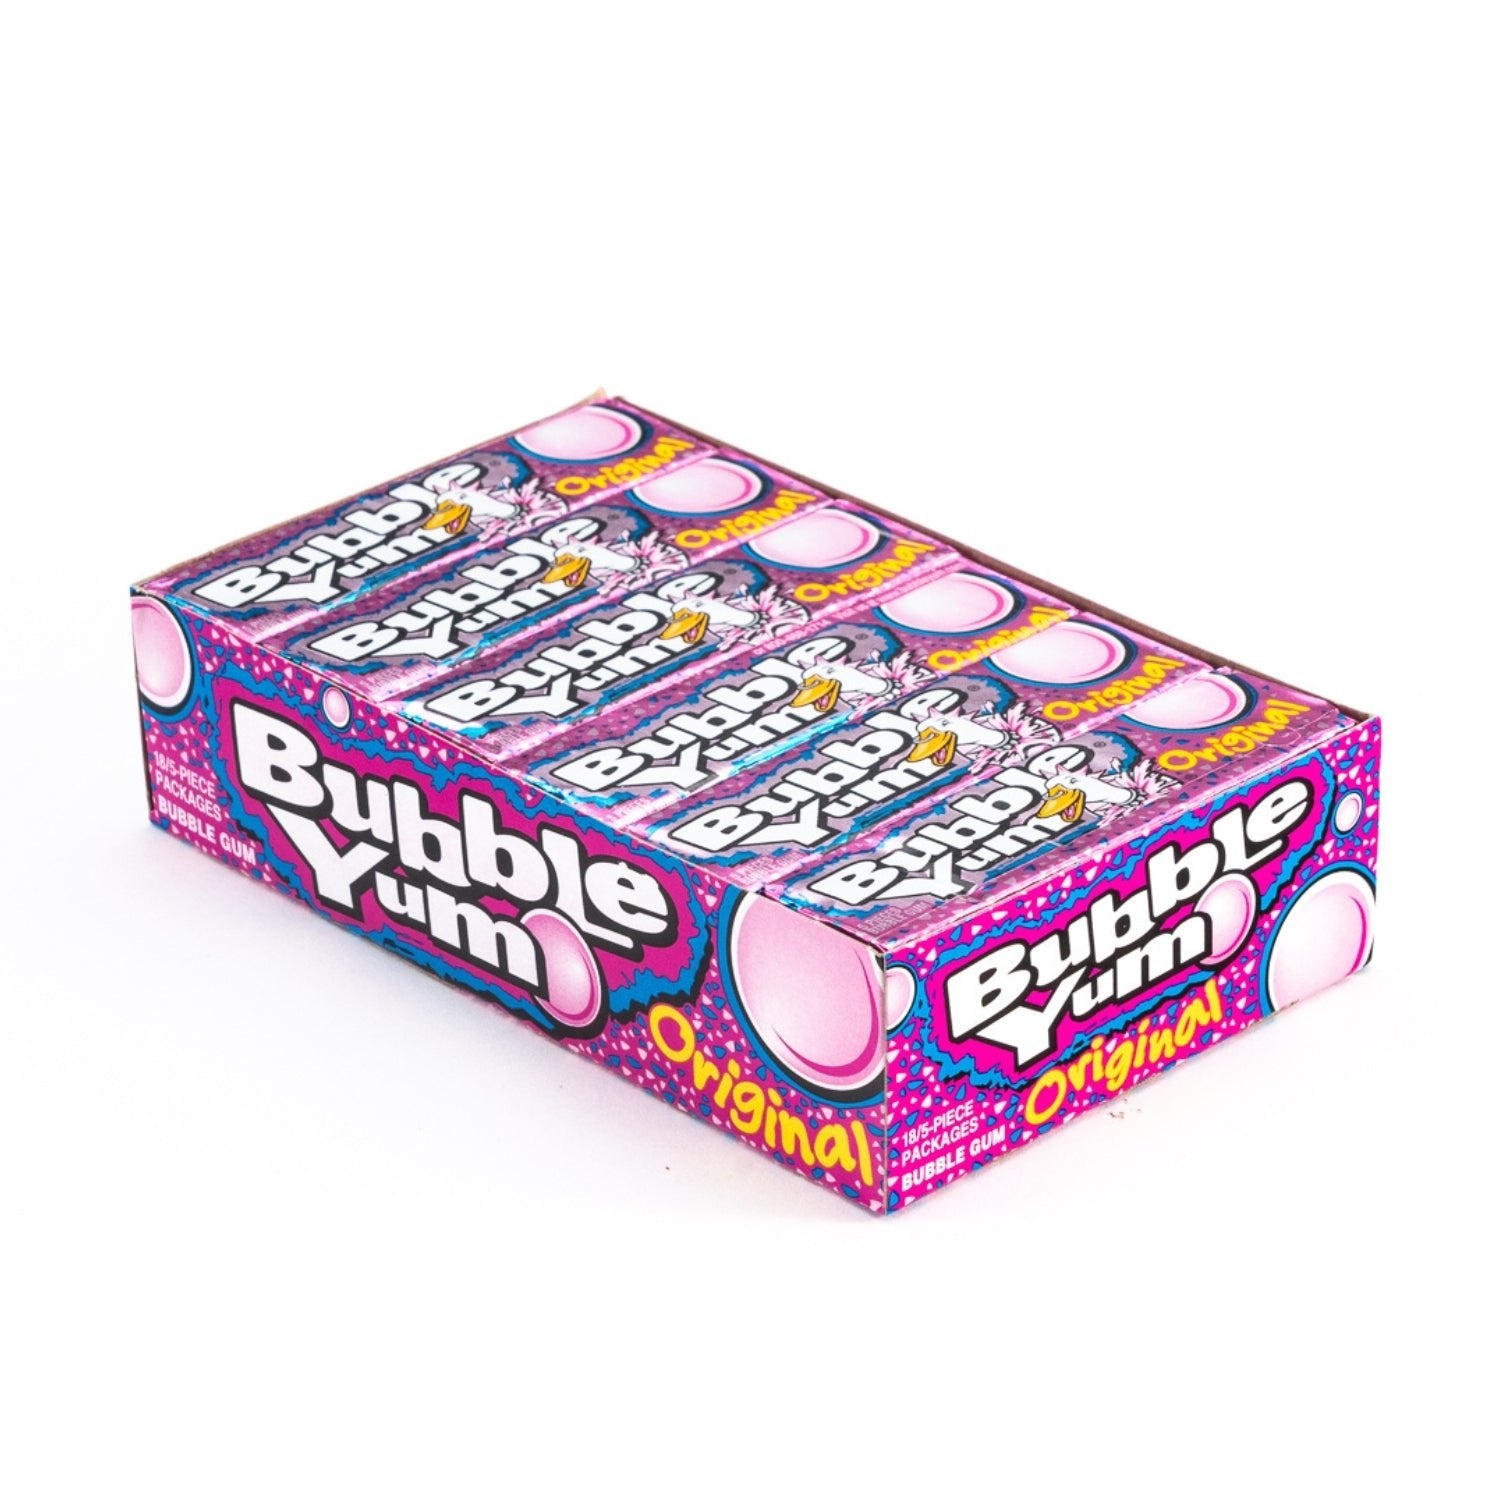 Bubble Yum Original Bubble Gum Bulk Box (1.4 oz, 18 ct.) - Vintage Candy Co.